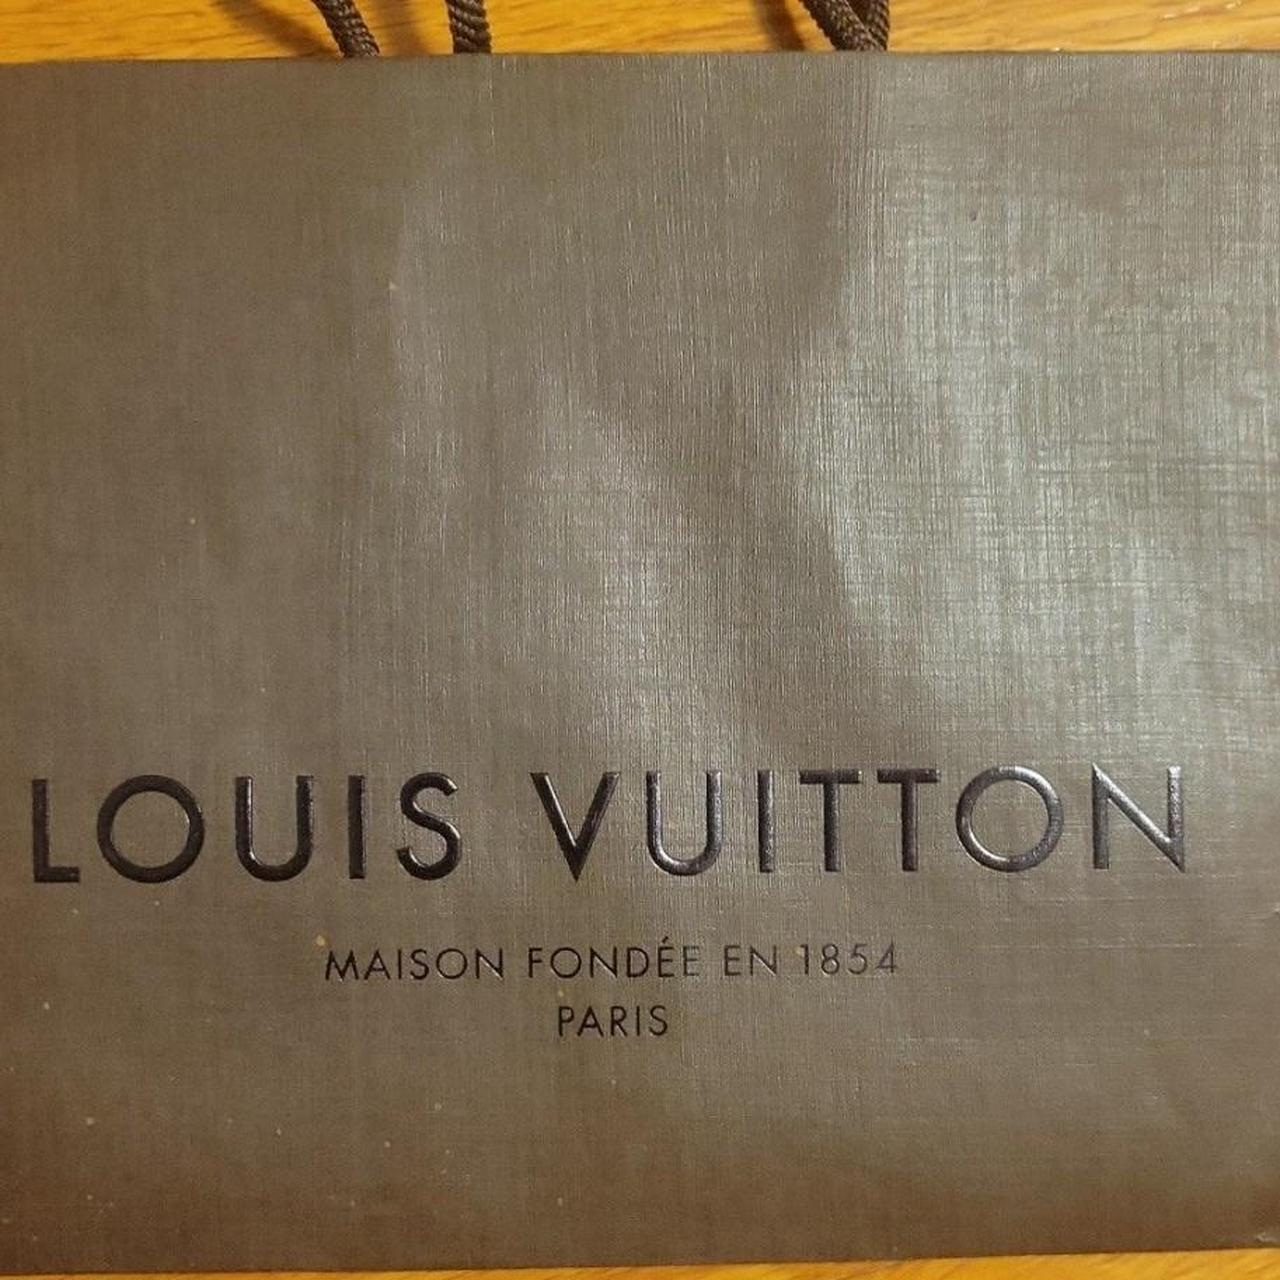 Louis Vuitton Maison Fondee En Paris 1854 Paris... - Depop